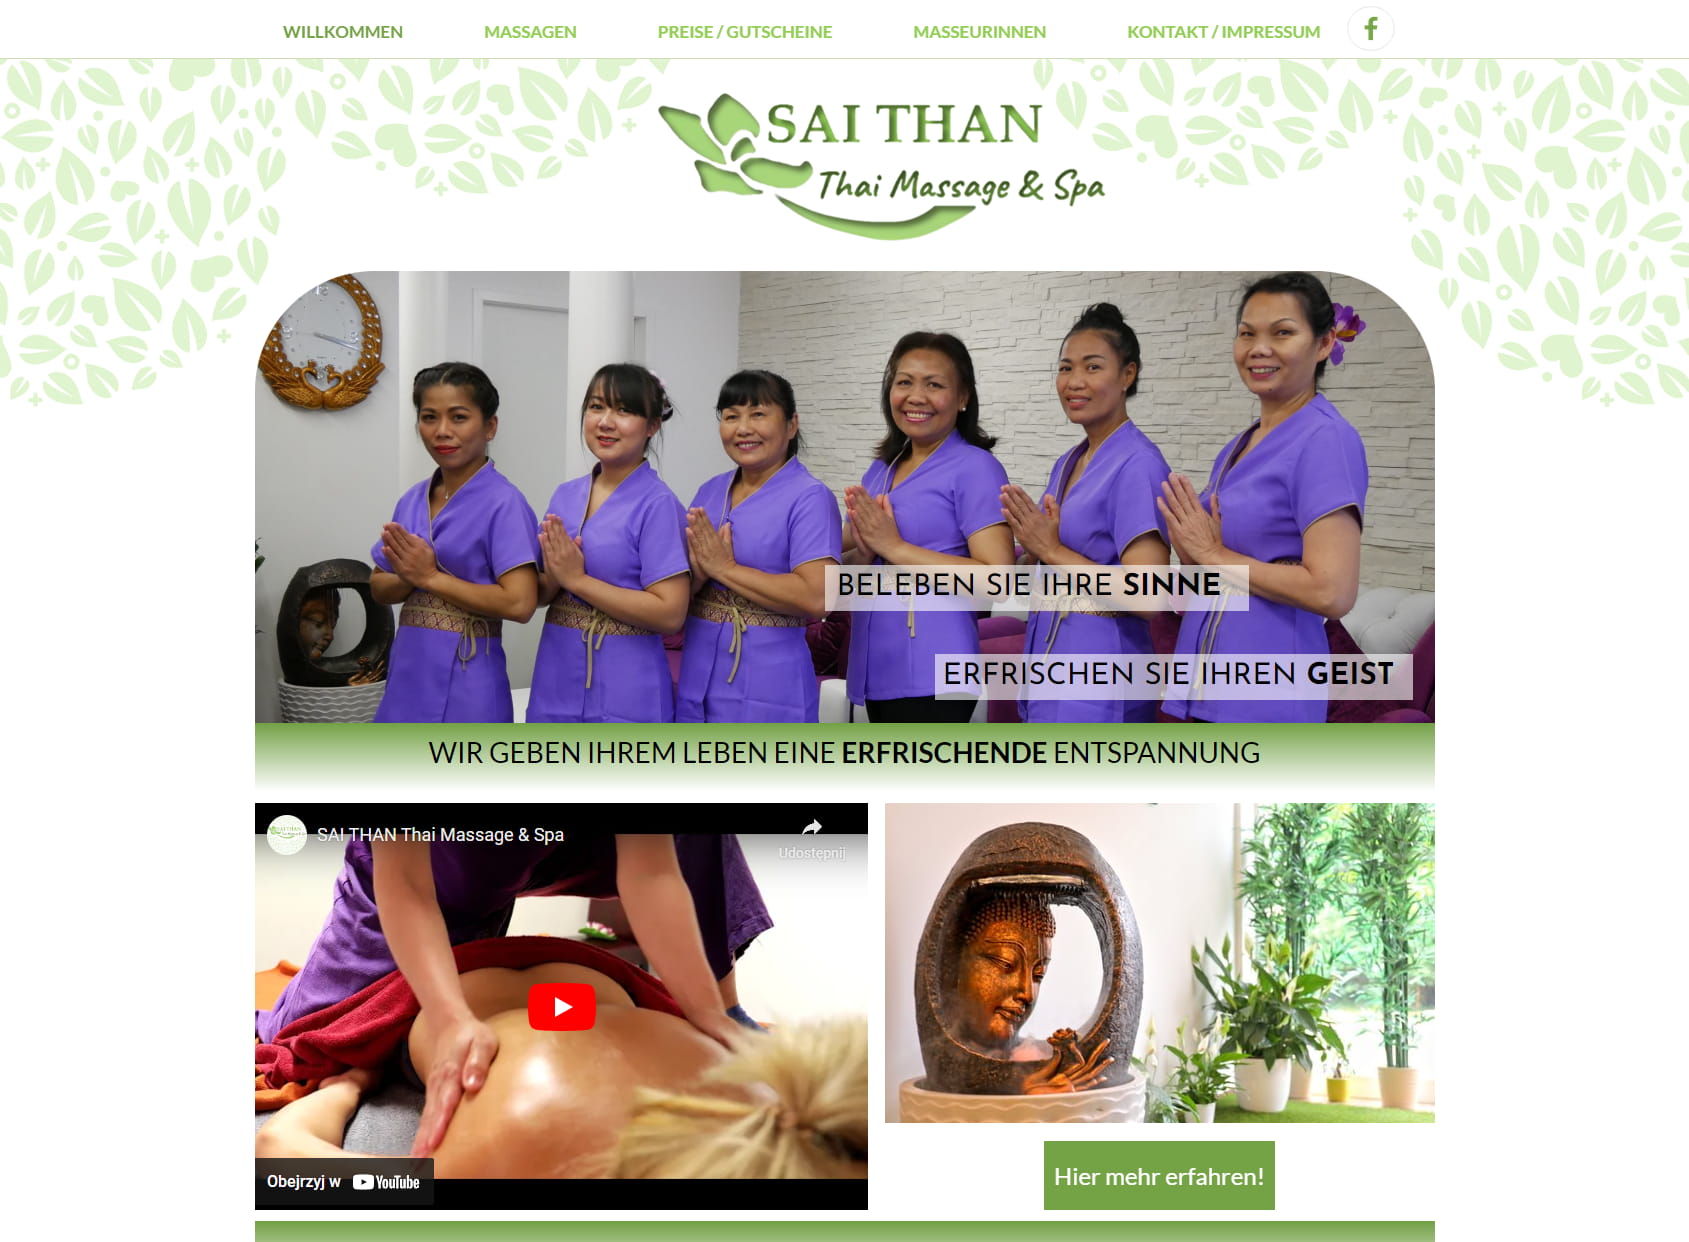 SAI THAN Thai Massage & Spa